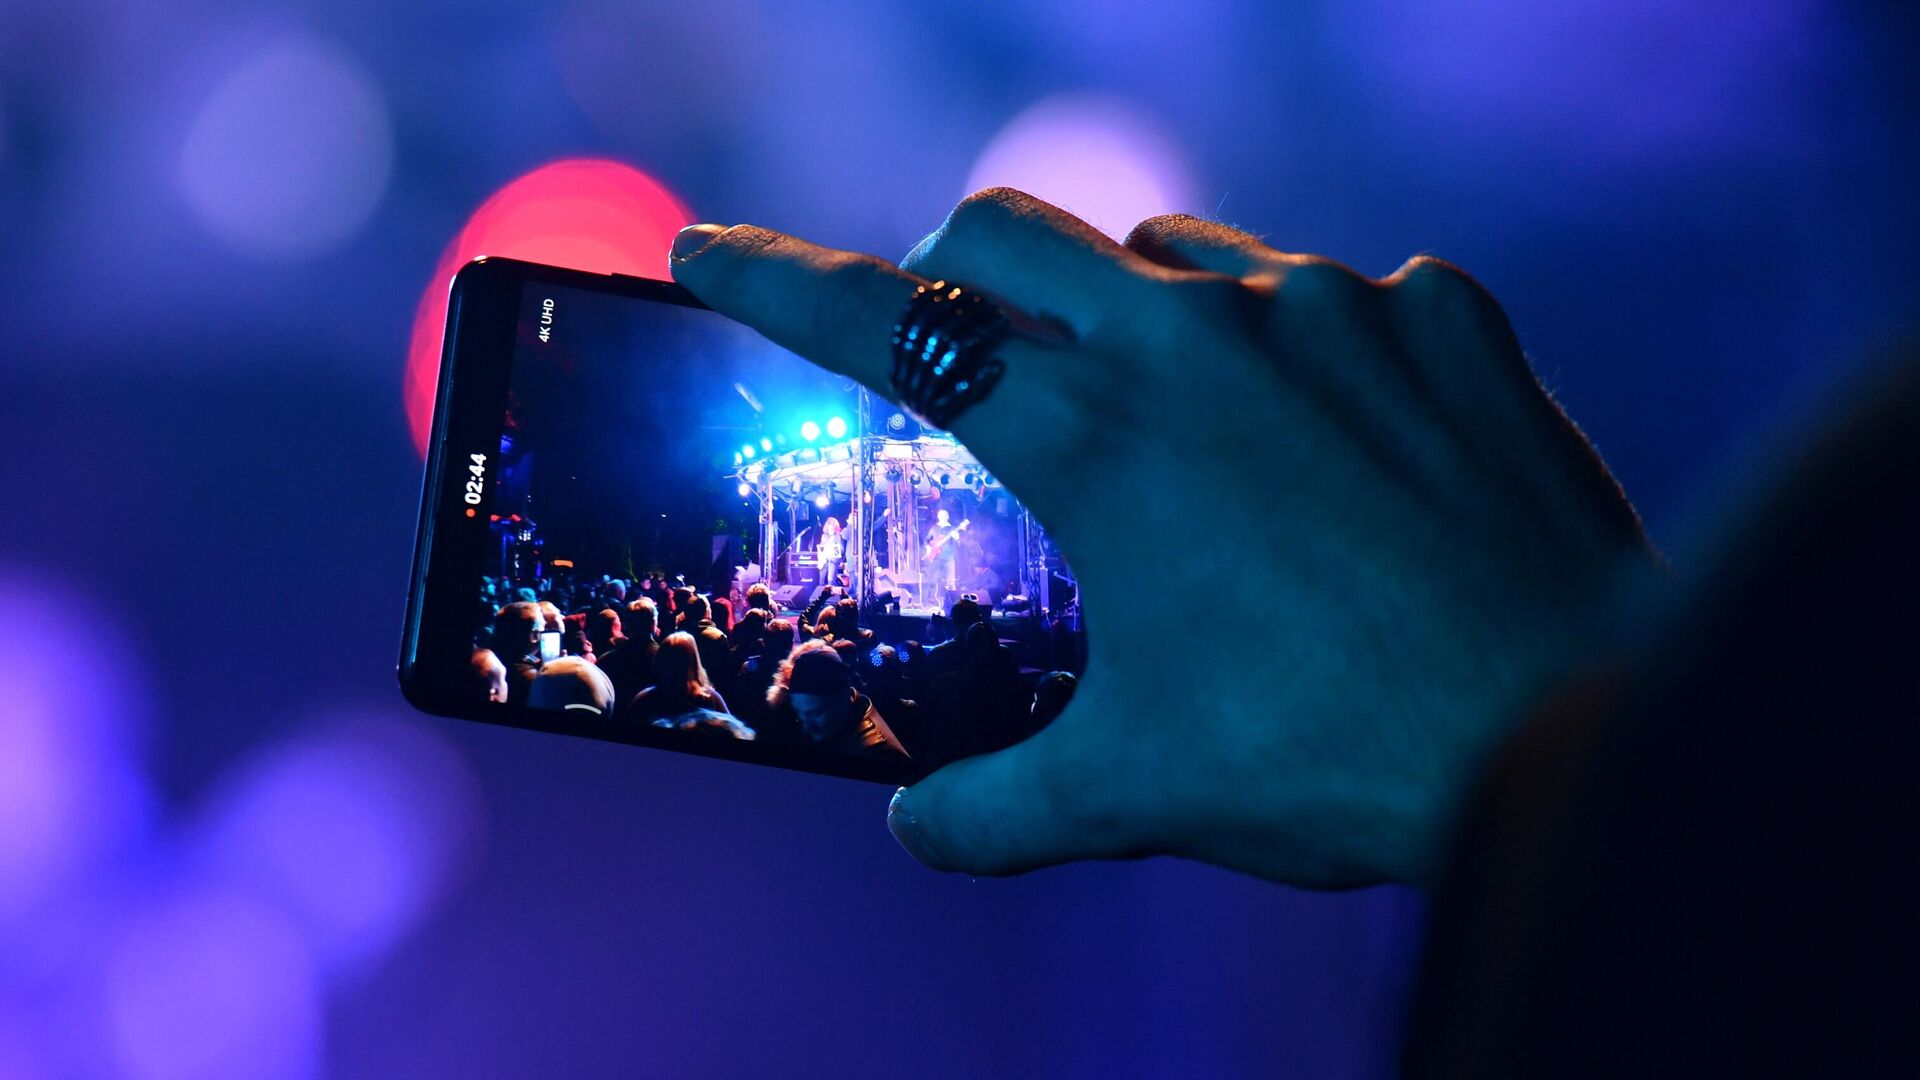 Зритель снимает на мобильный телефон выступление музыкантов на концерте - РИА Новости, 1920, 08.10.2020